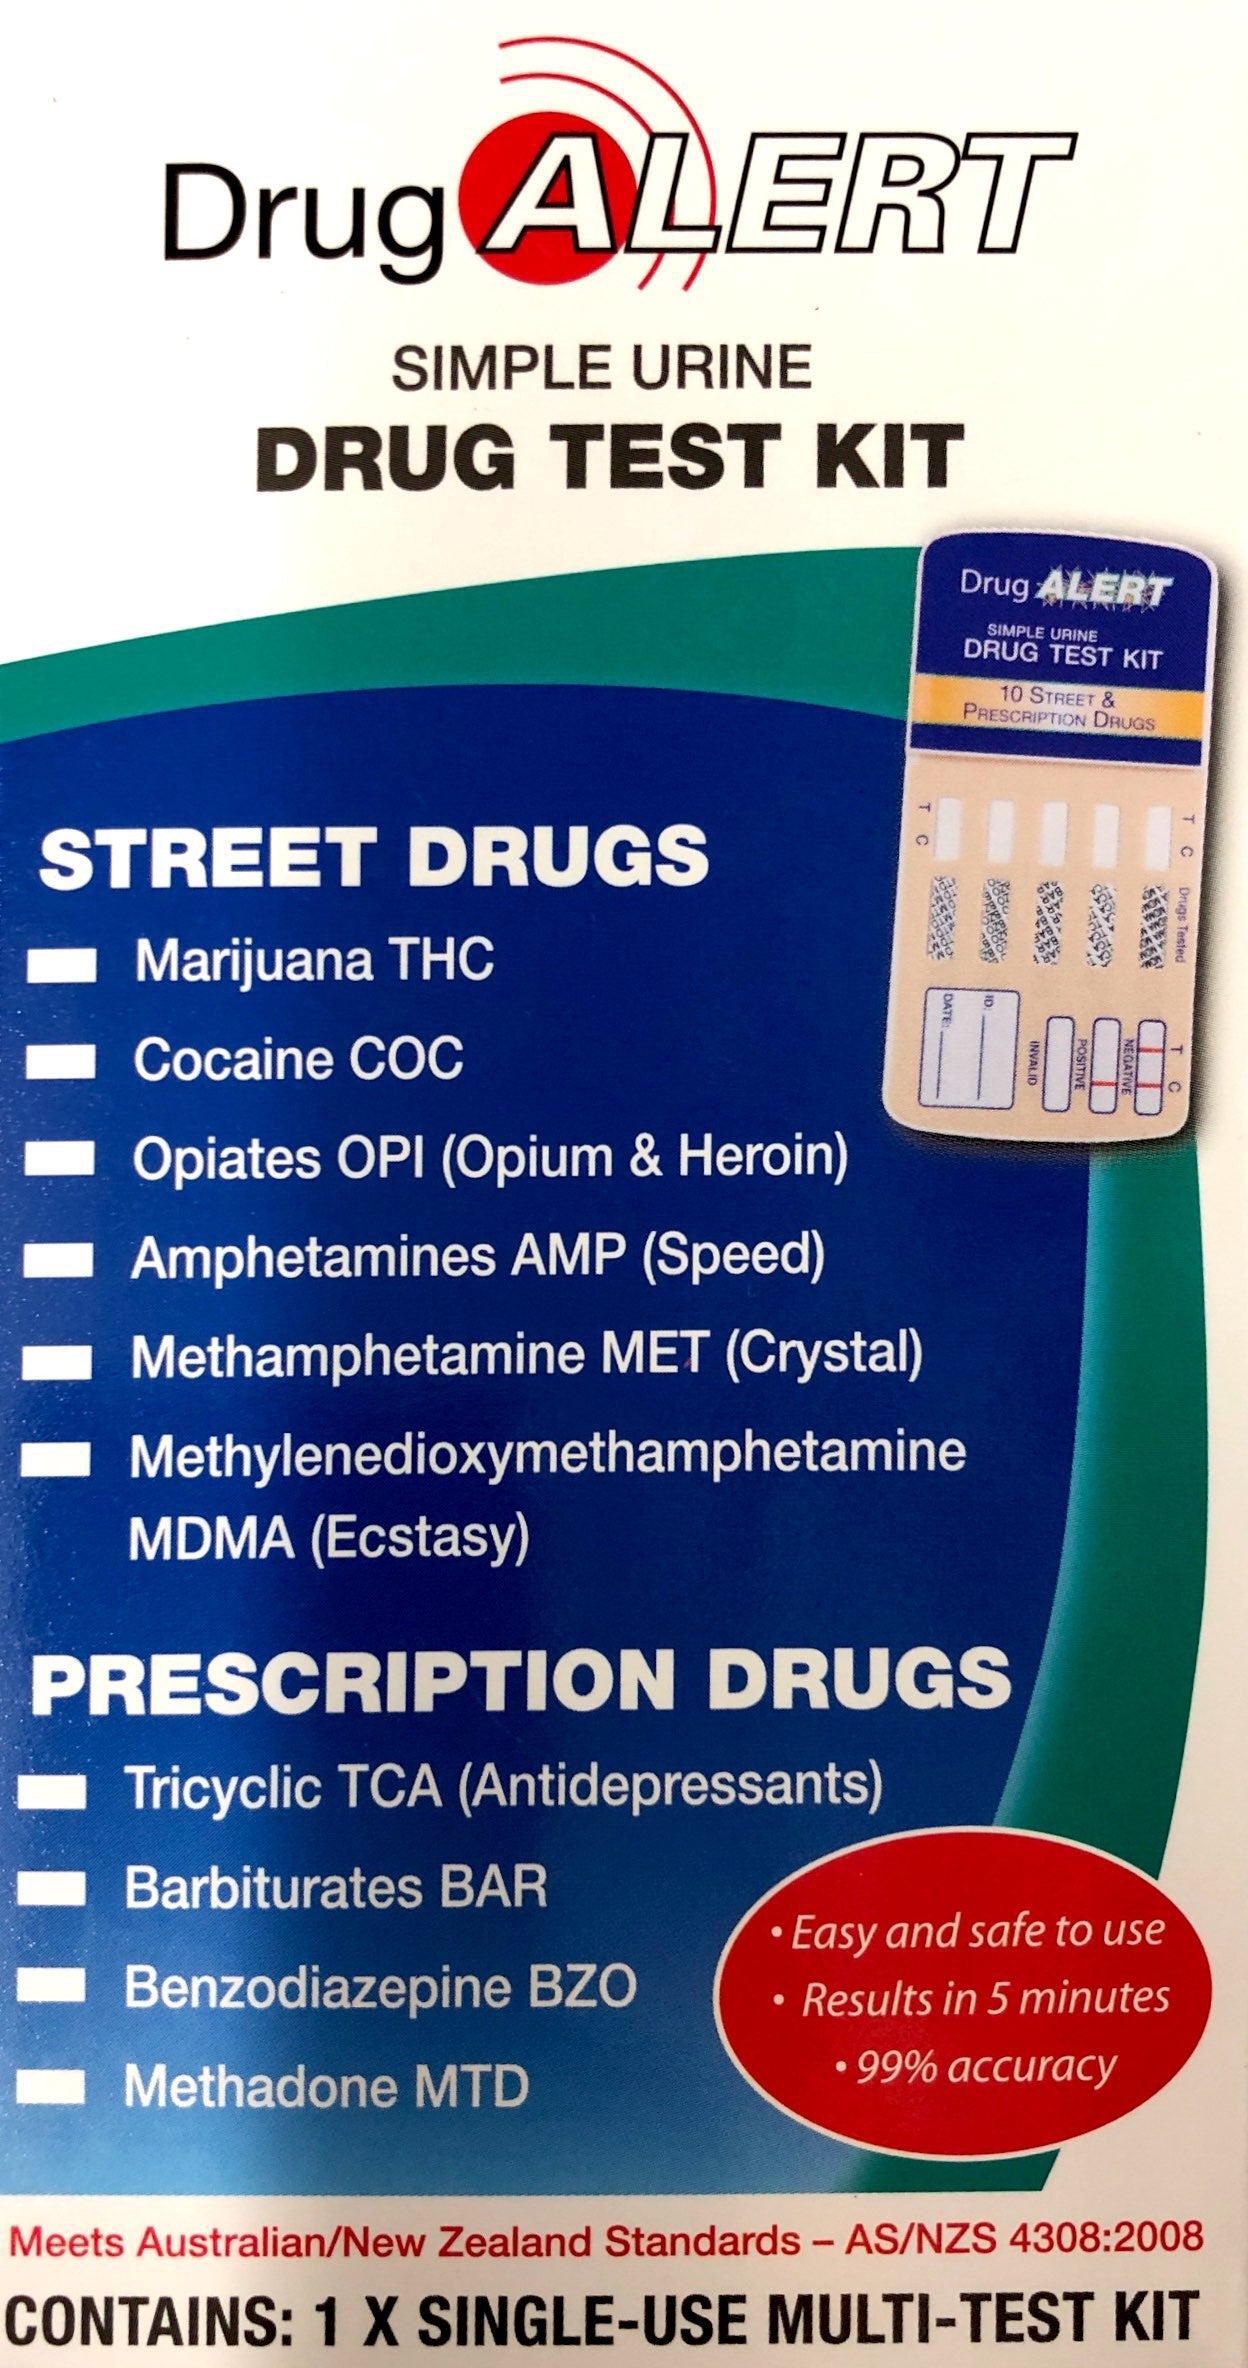 Drug Alert Urine Drug 1 Test Kit 6 street drugs 4 prescription drugs - Pakuranga Pharmacy